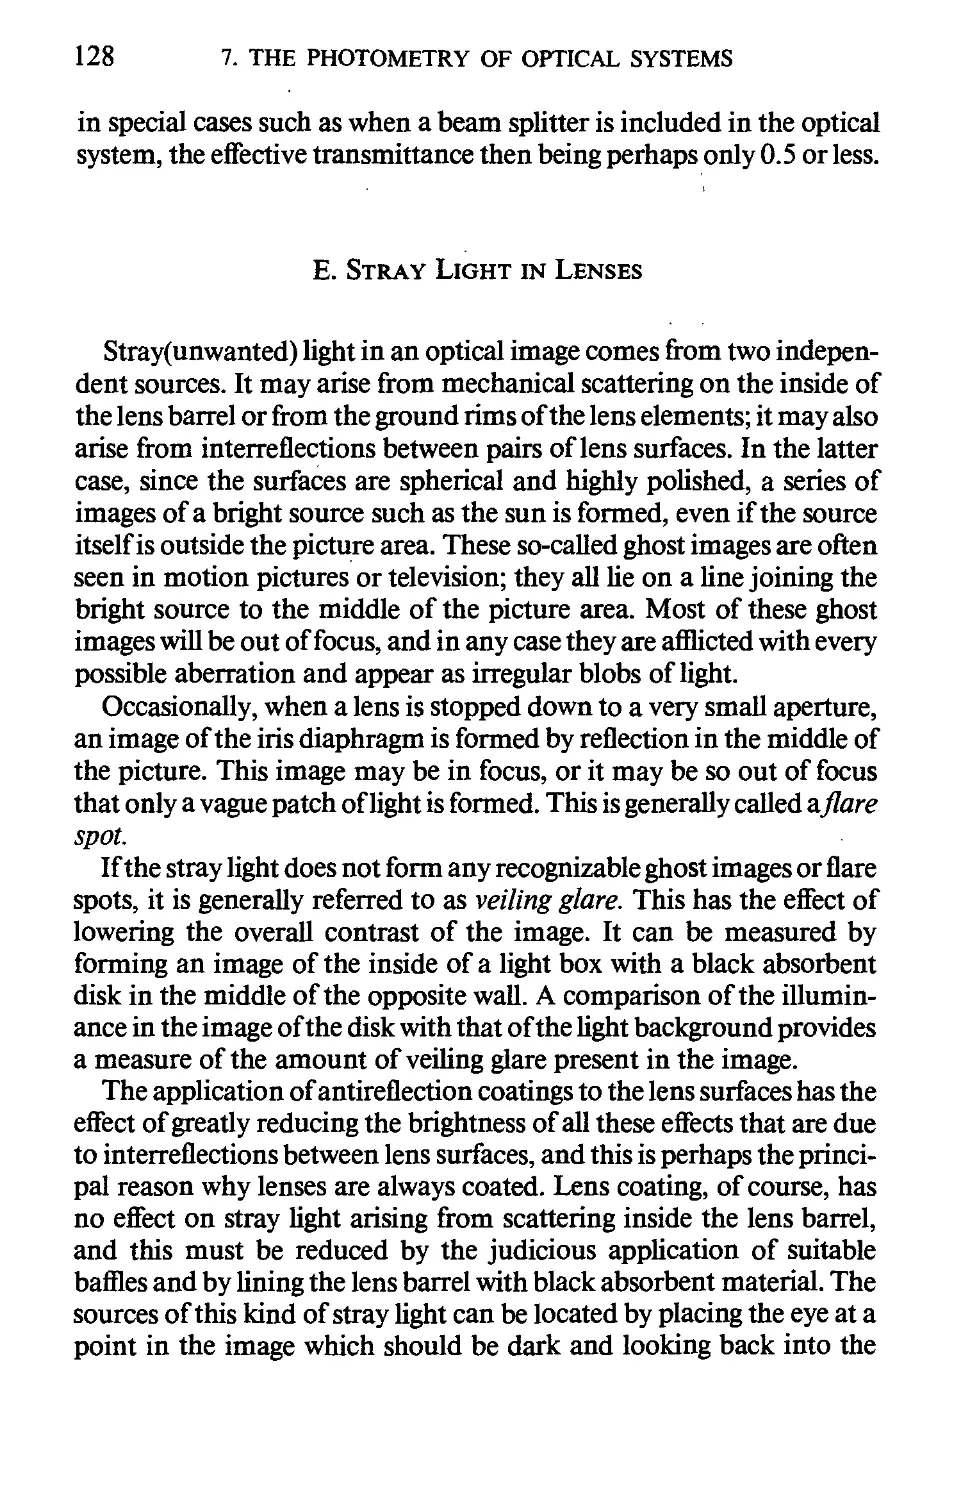 E. Stray Light in Lenses